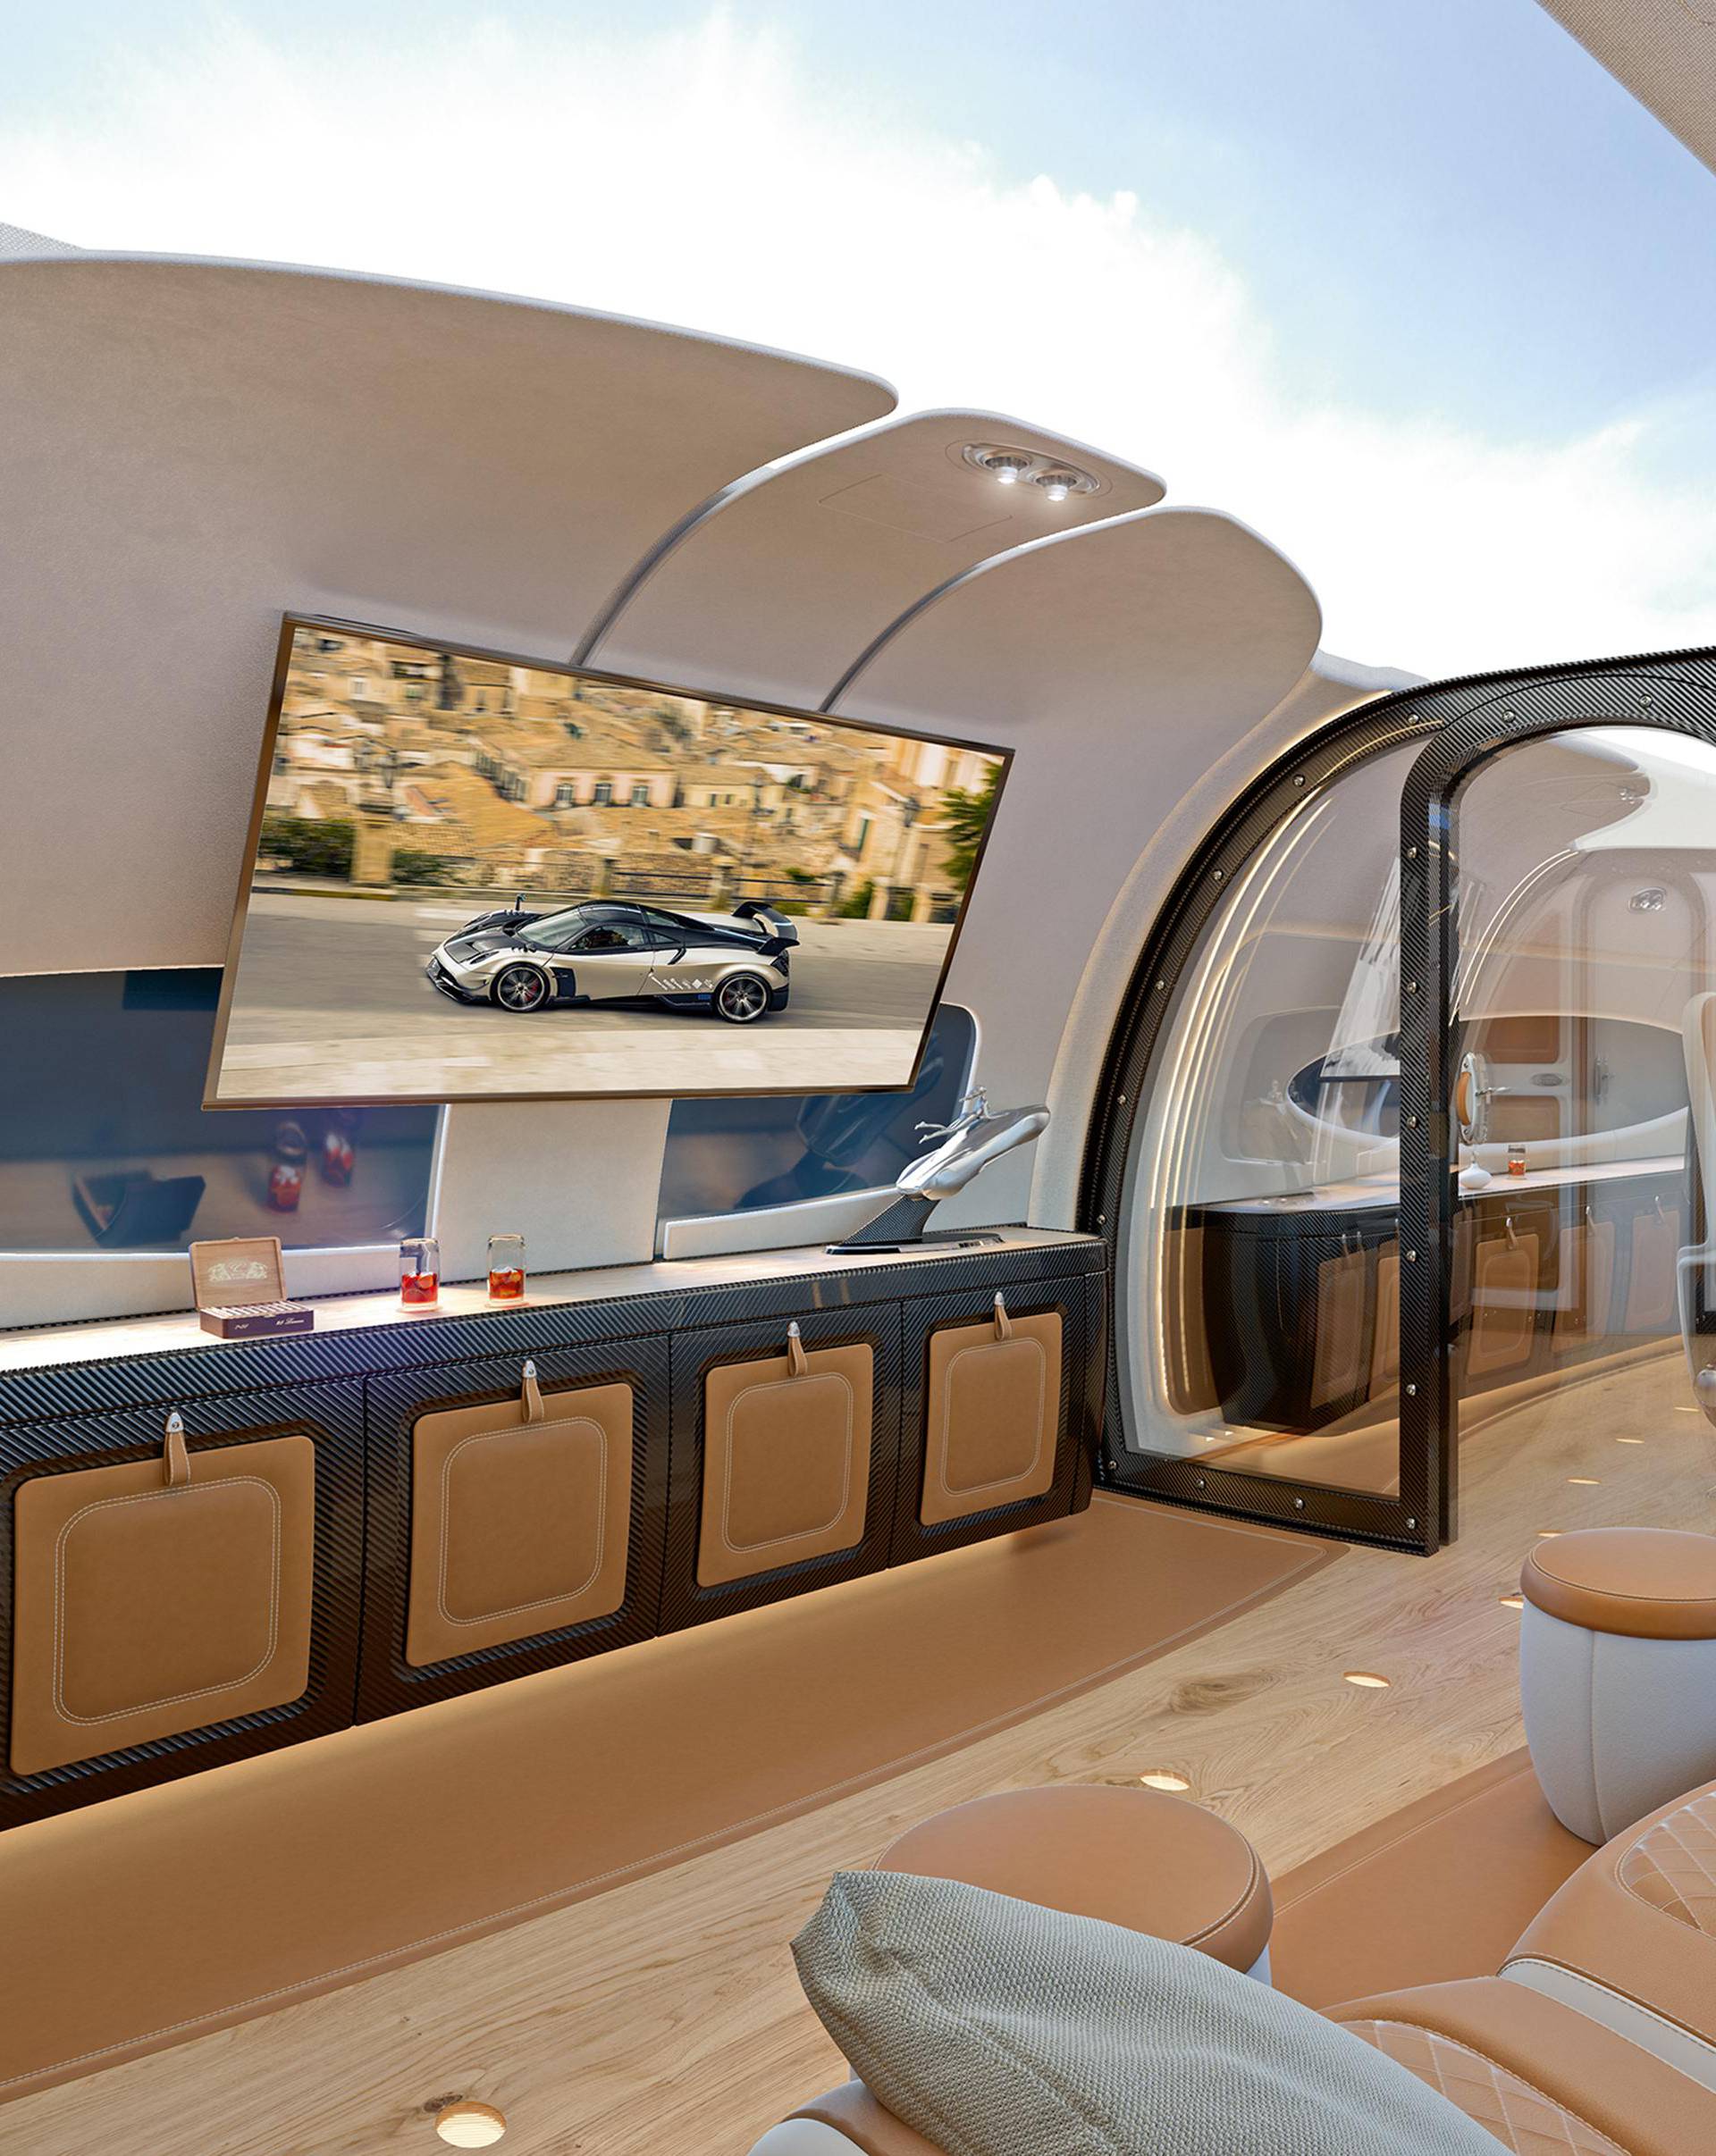 Ovako se da letjeti: Cijeli krov ovog Airbusa je 'prozor' u nebo